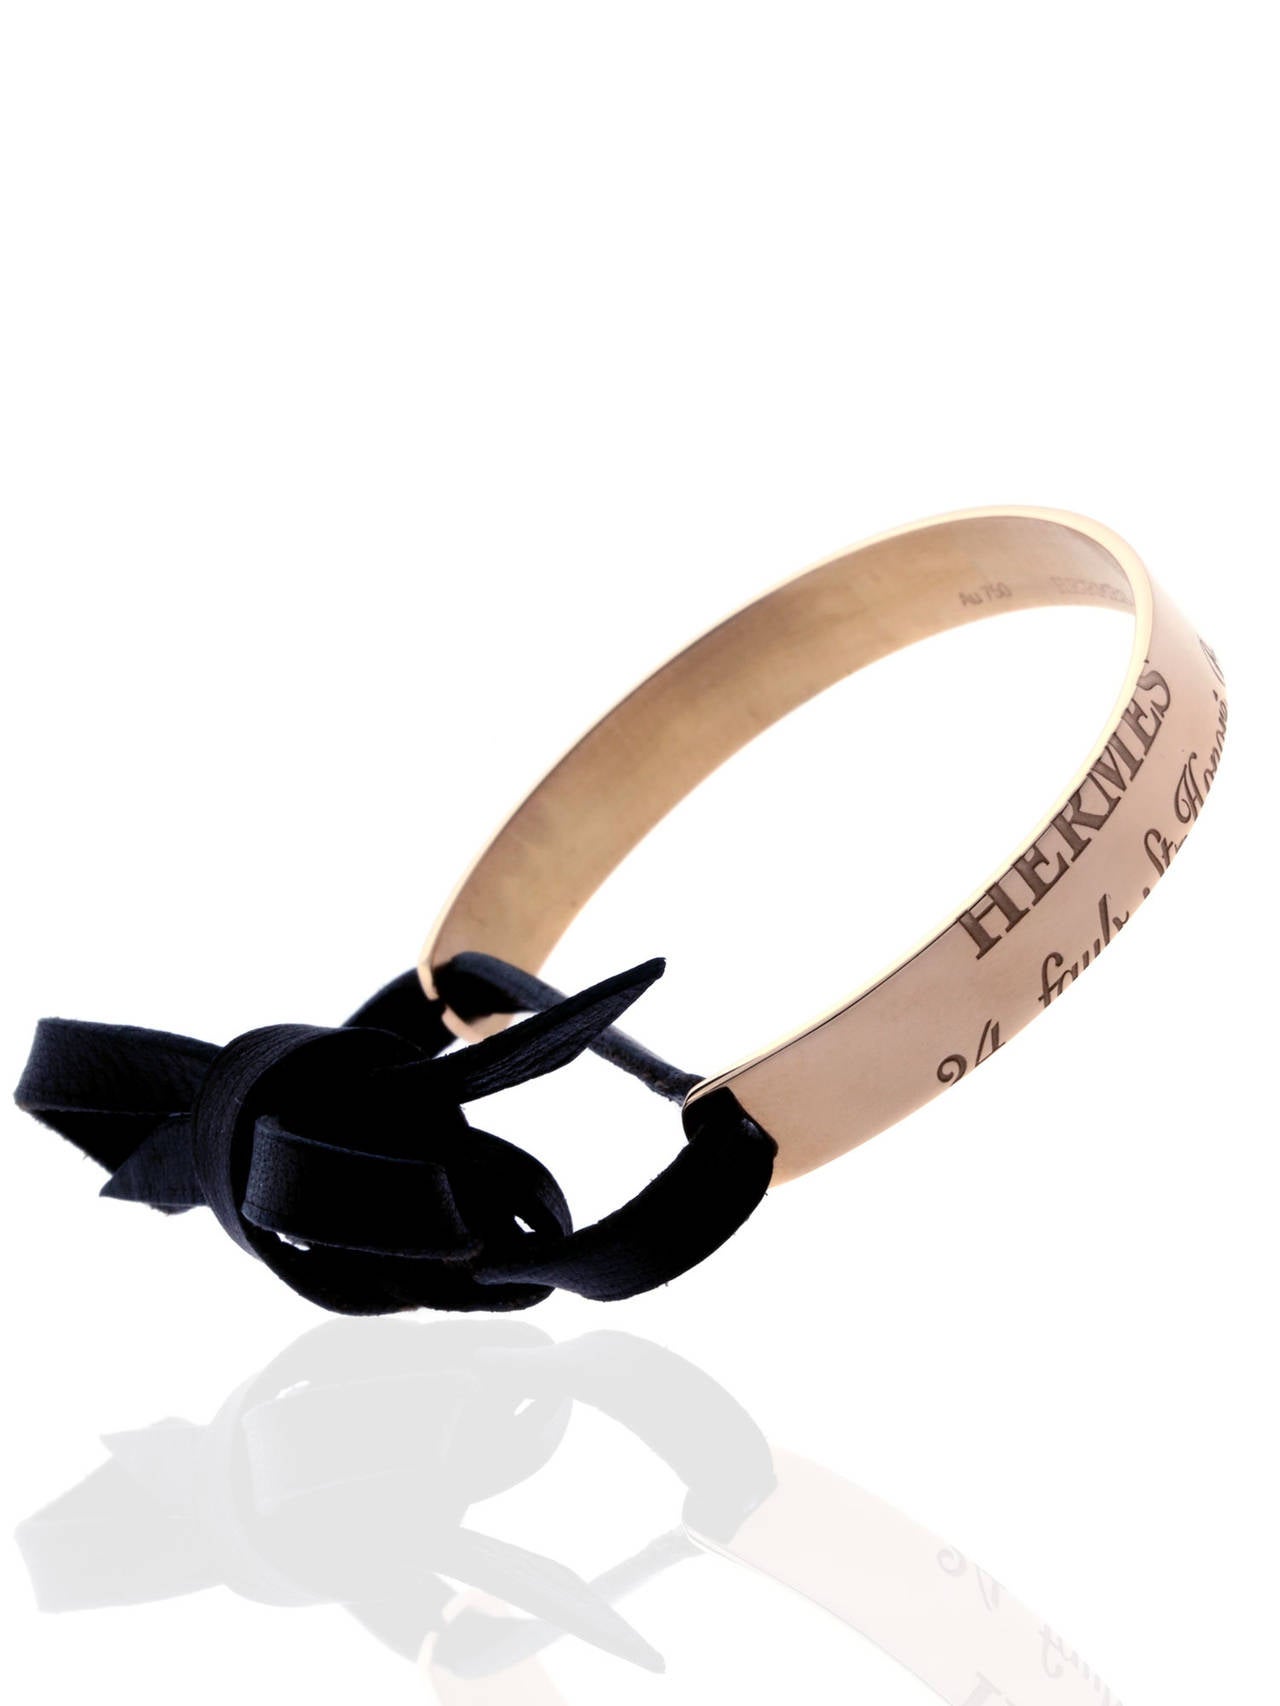 Hermes Gold Bangle Bracelet For Sale at 1stdibs